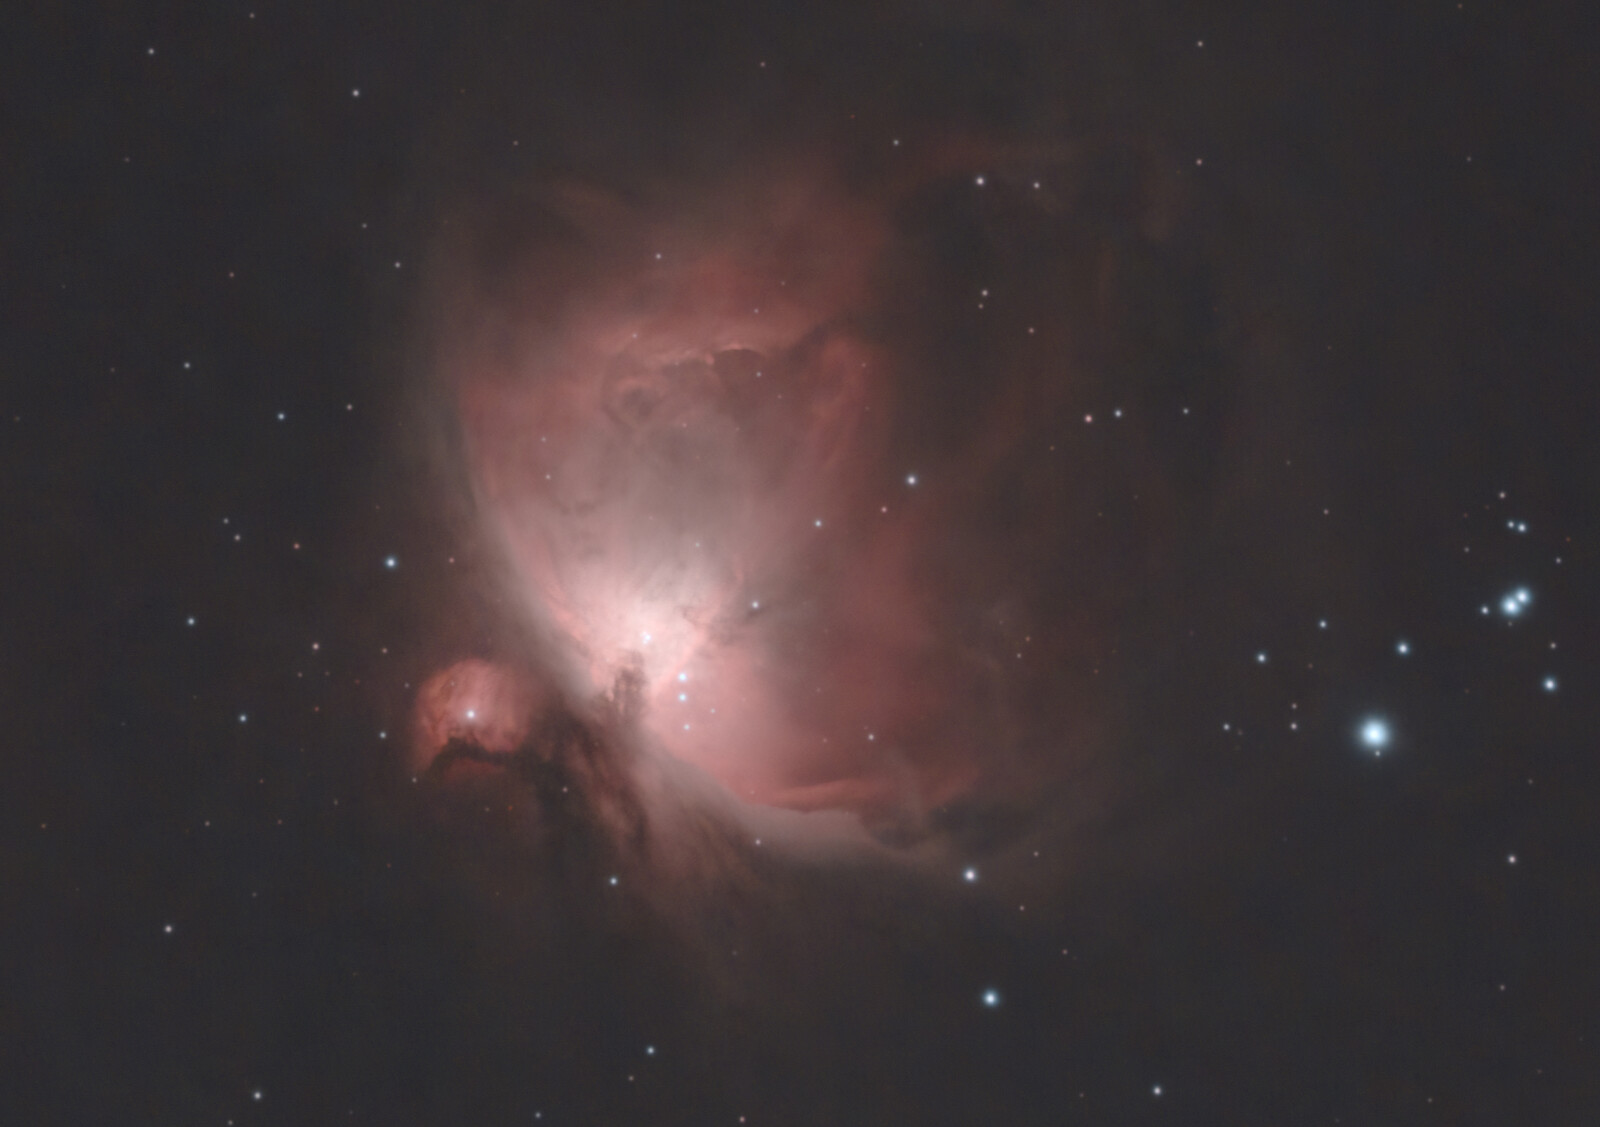 8 min on the Orion nebula's core